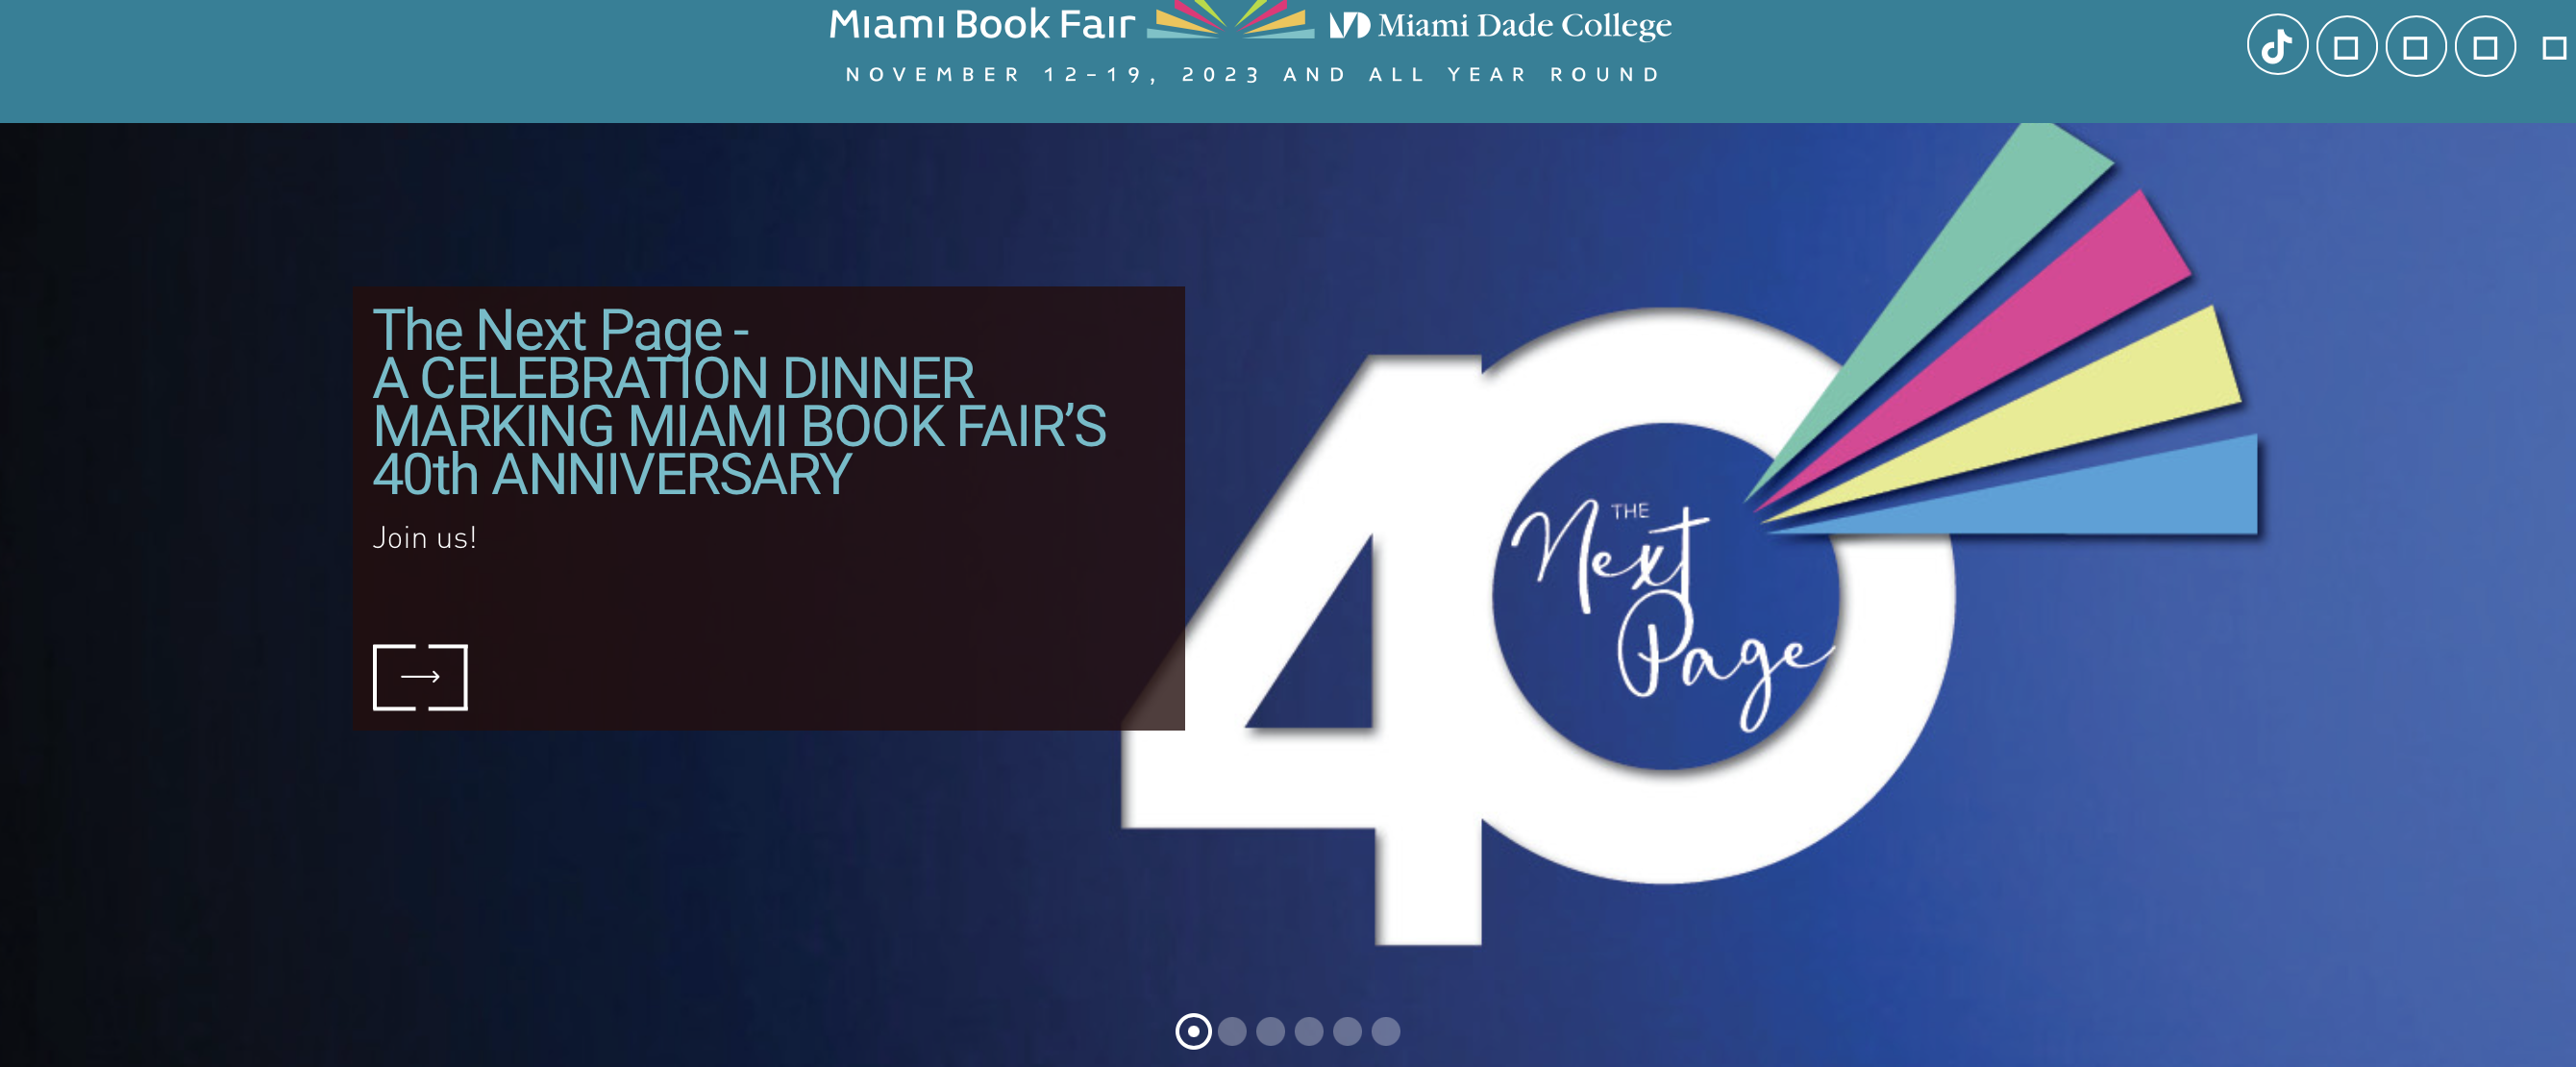 author conferences_miami book fair